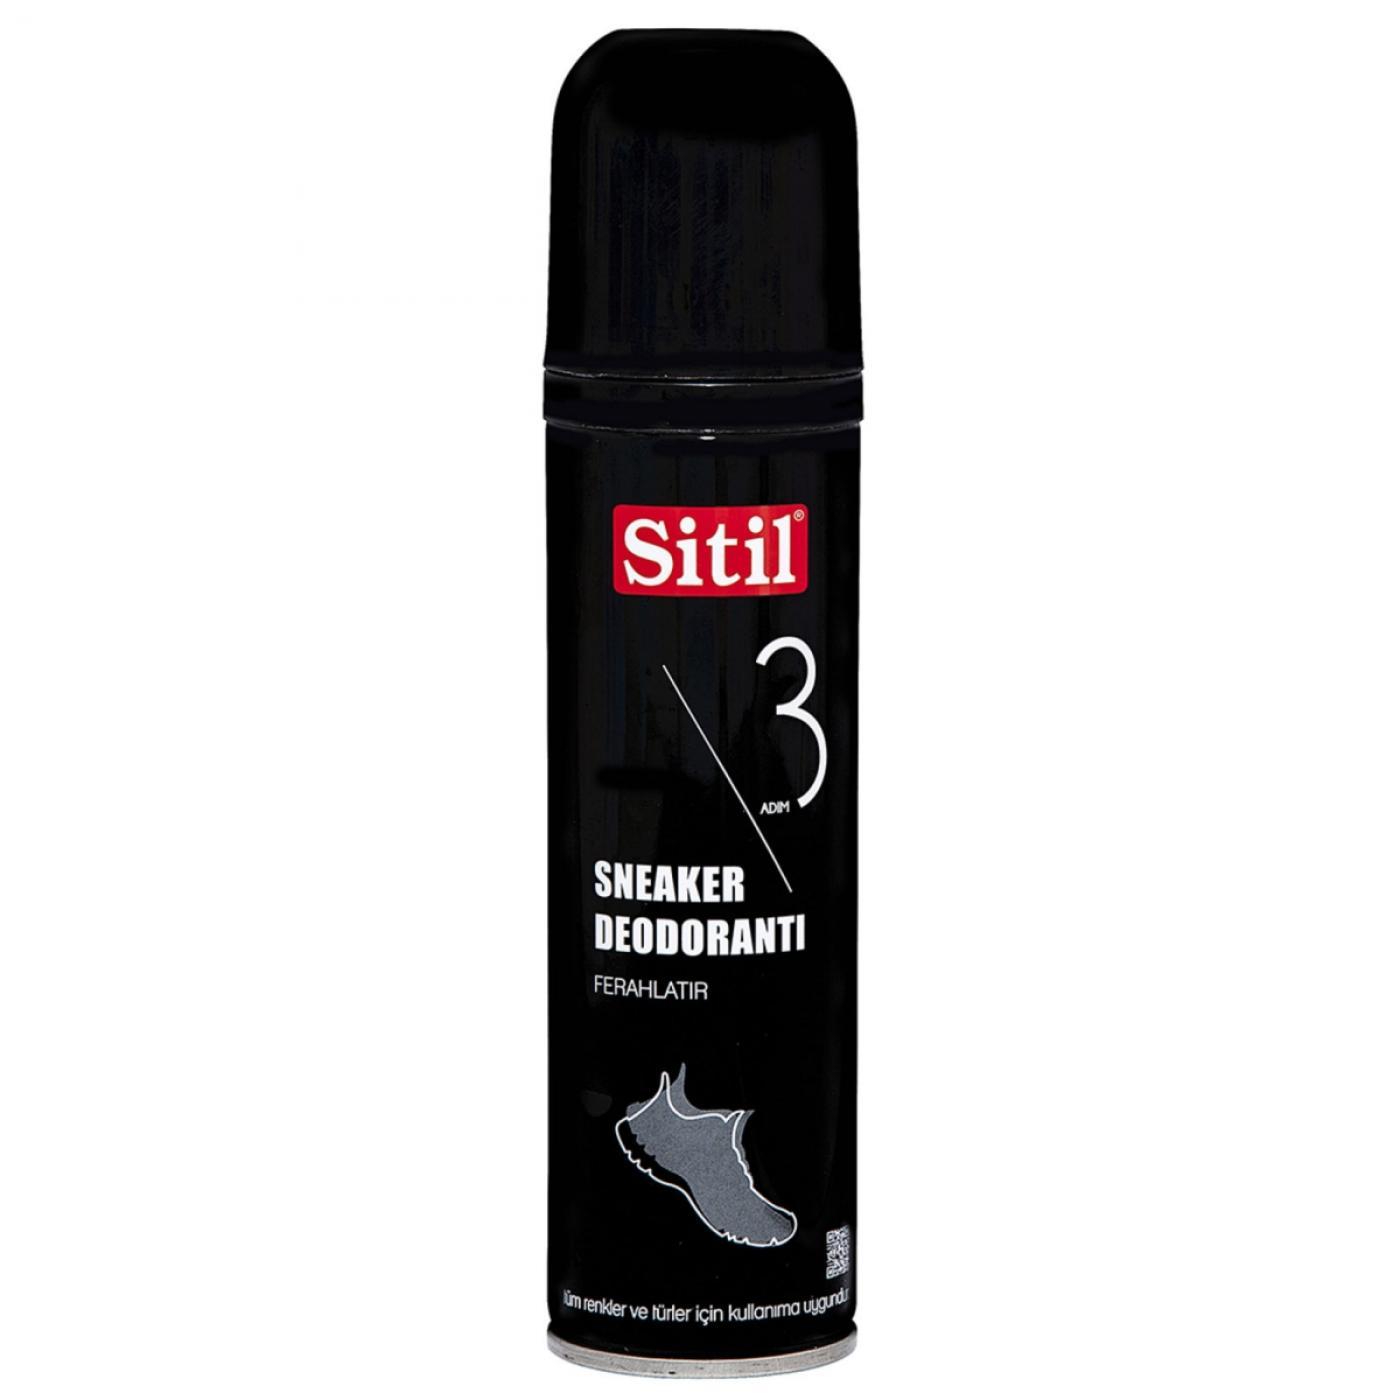 Дезодорант Sitil для обуви 150 мл дезодорант silver для обуви 100 мл sd1006 00 sd3006 00 sd2006 00